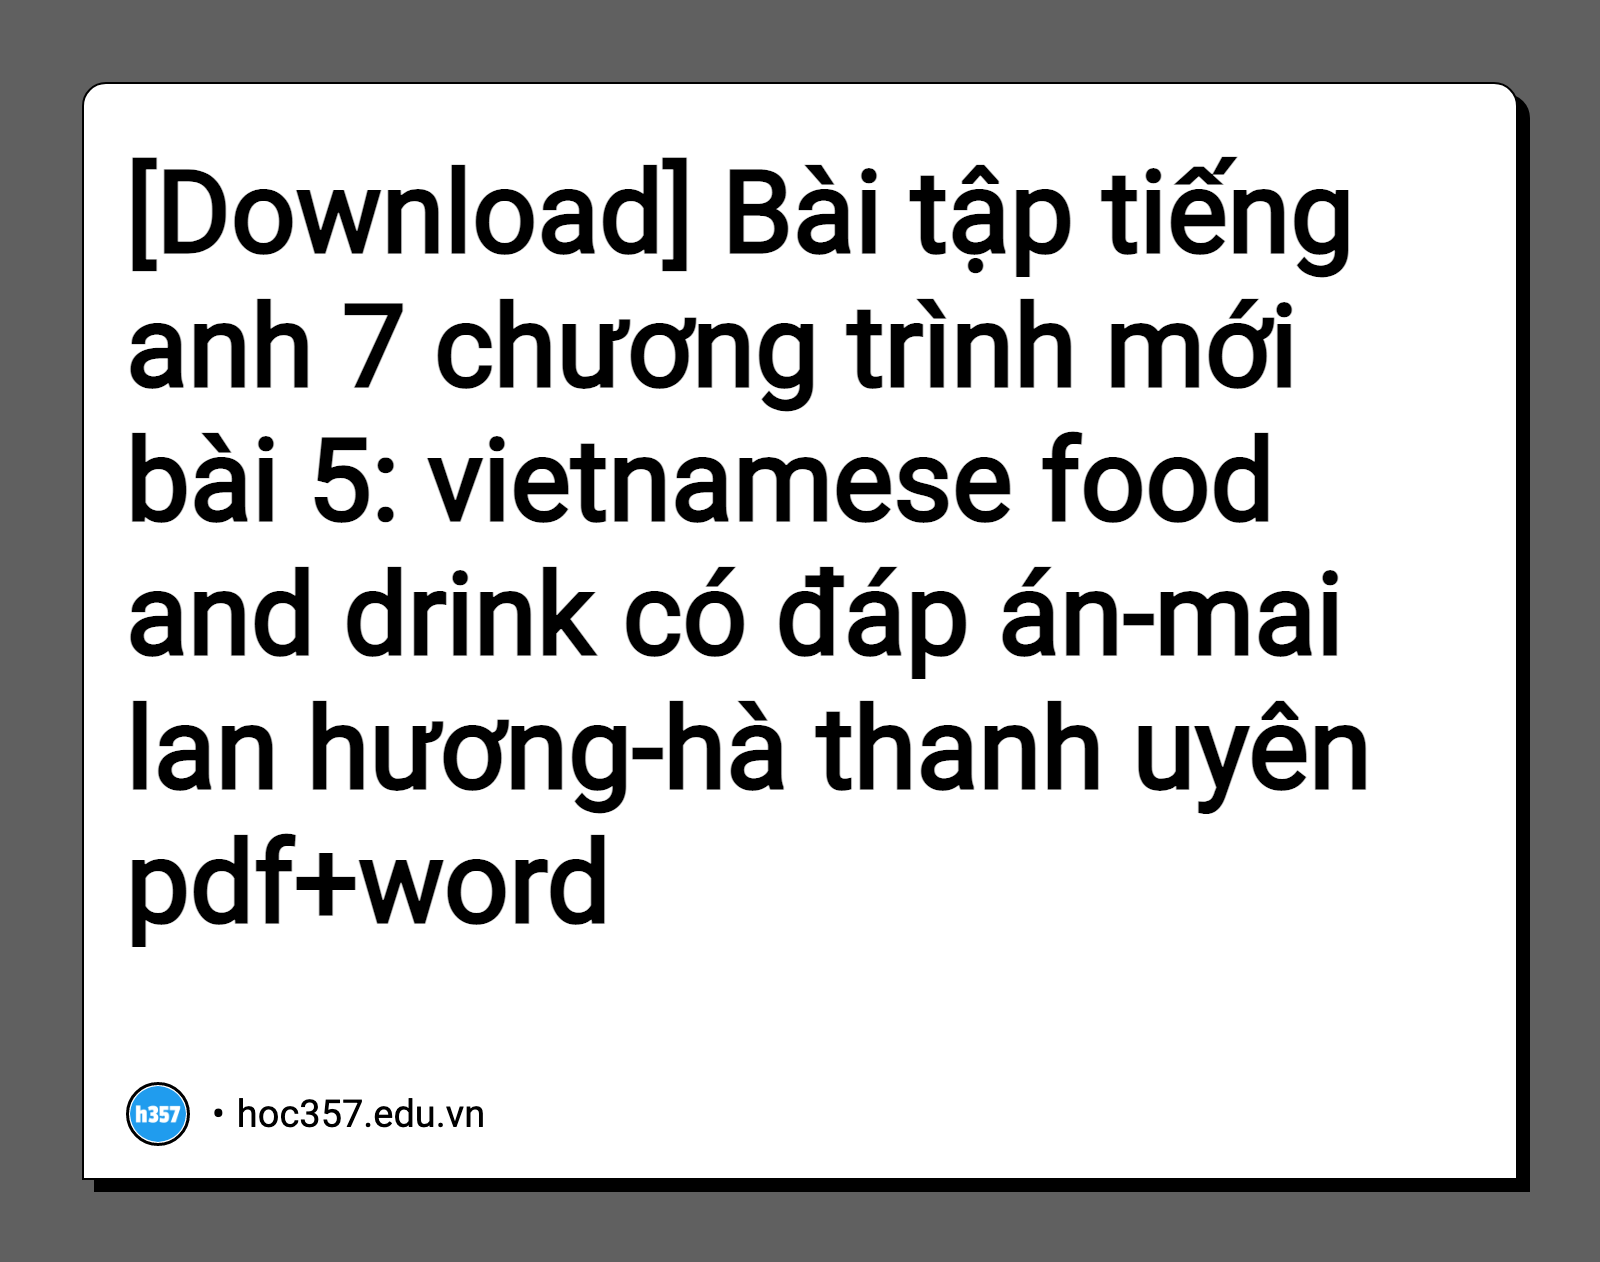 Hình minh họa Bài tập tiếng anh 7 chương trình mới bài 5: vietnamese food and drink có đáp án-mai lan hương-hà thanh uyên